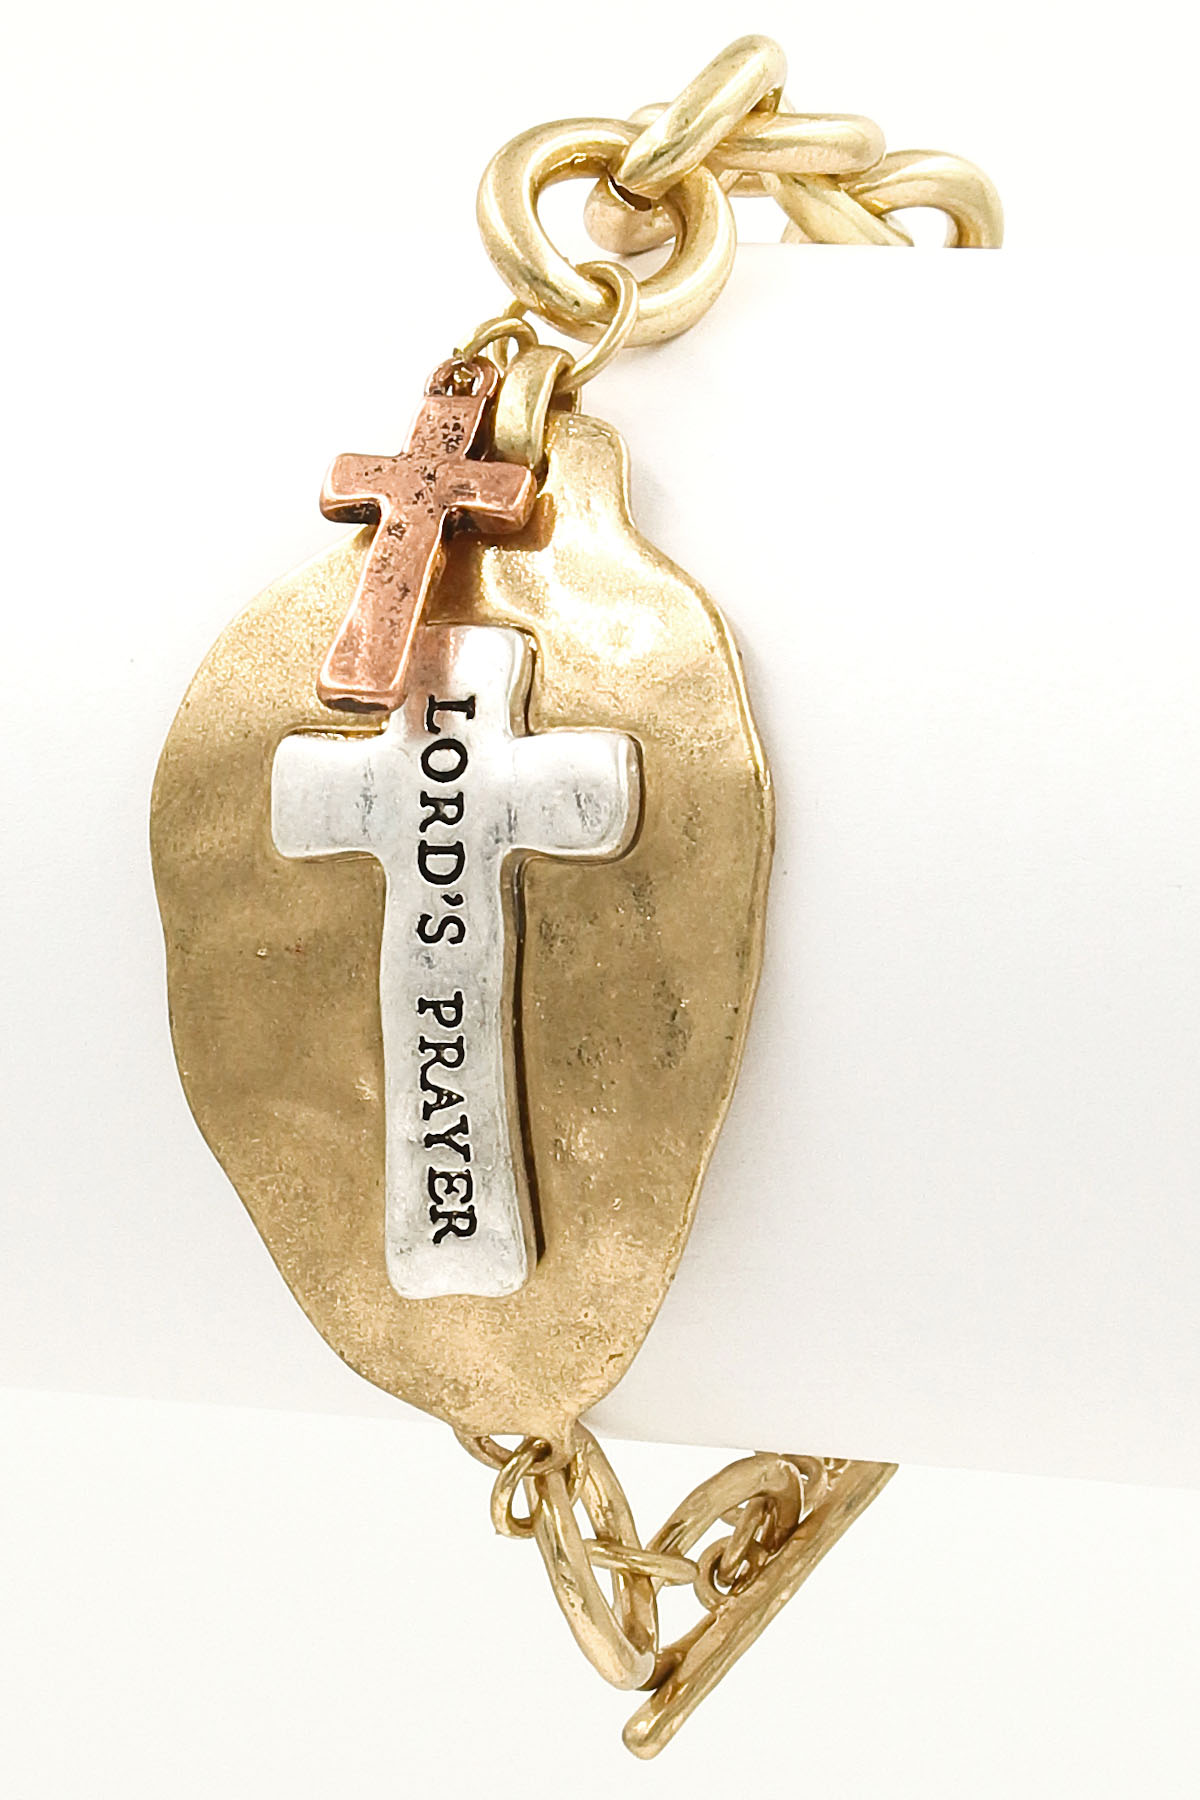 'LORD'S PRAYER' Engraved Bracelet - Religious & Textured Bracelets